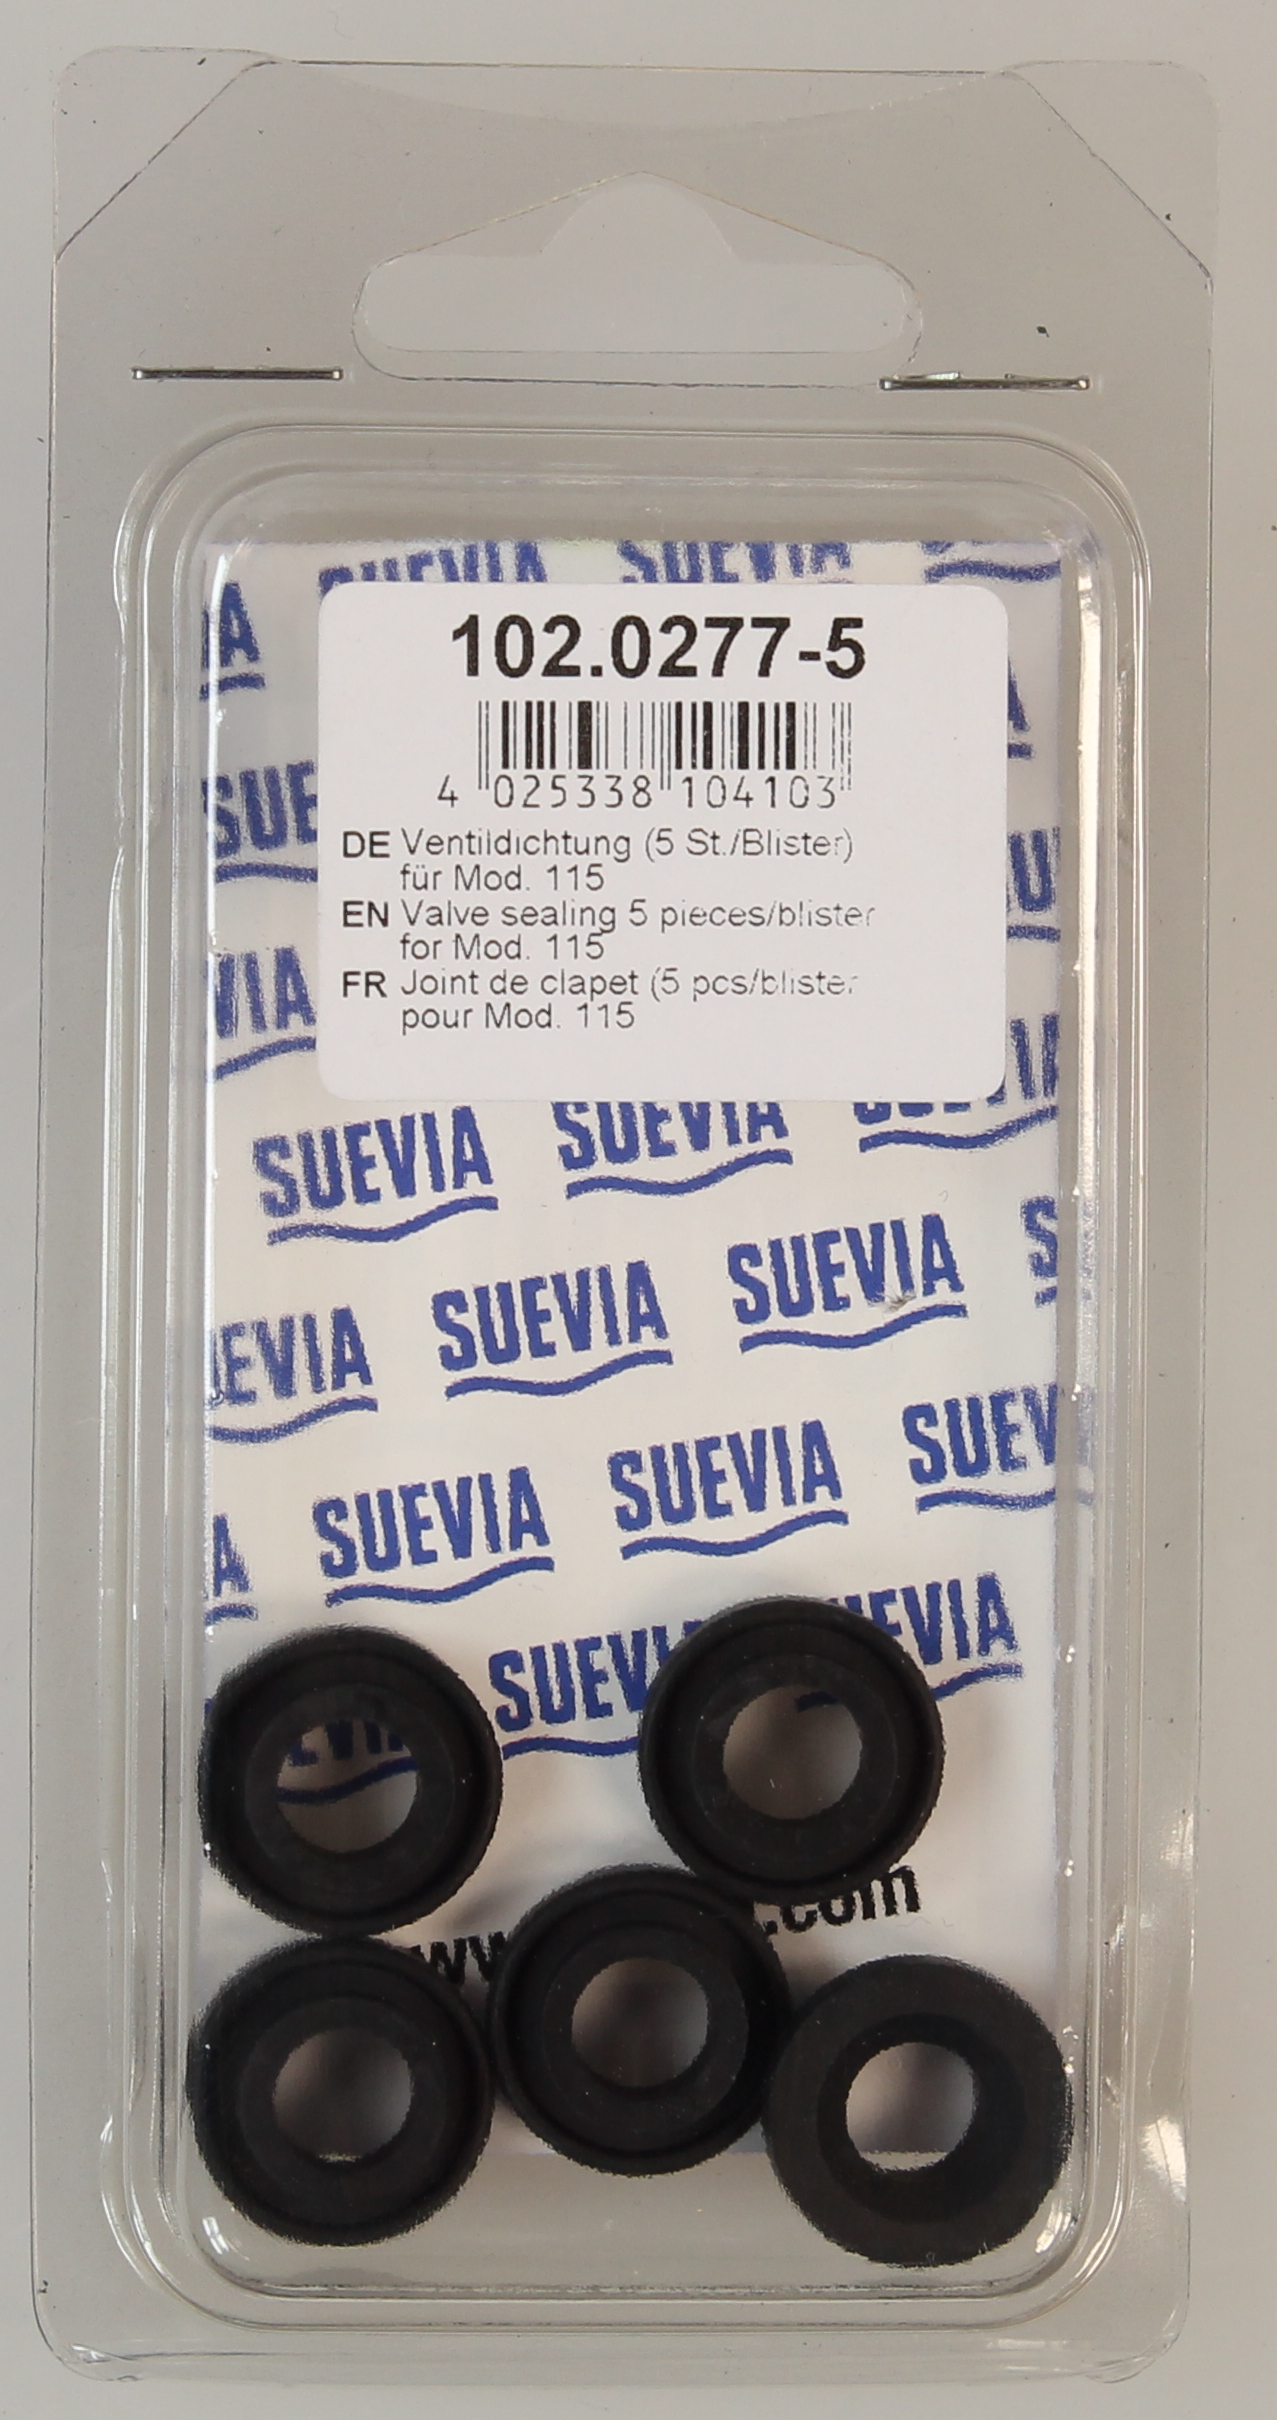 SUEVIA Ventildichtung für Mod. 115 (5 Stück)